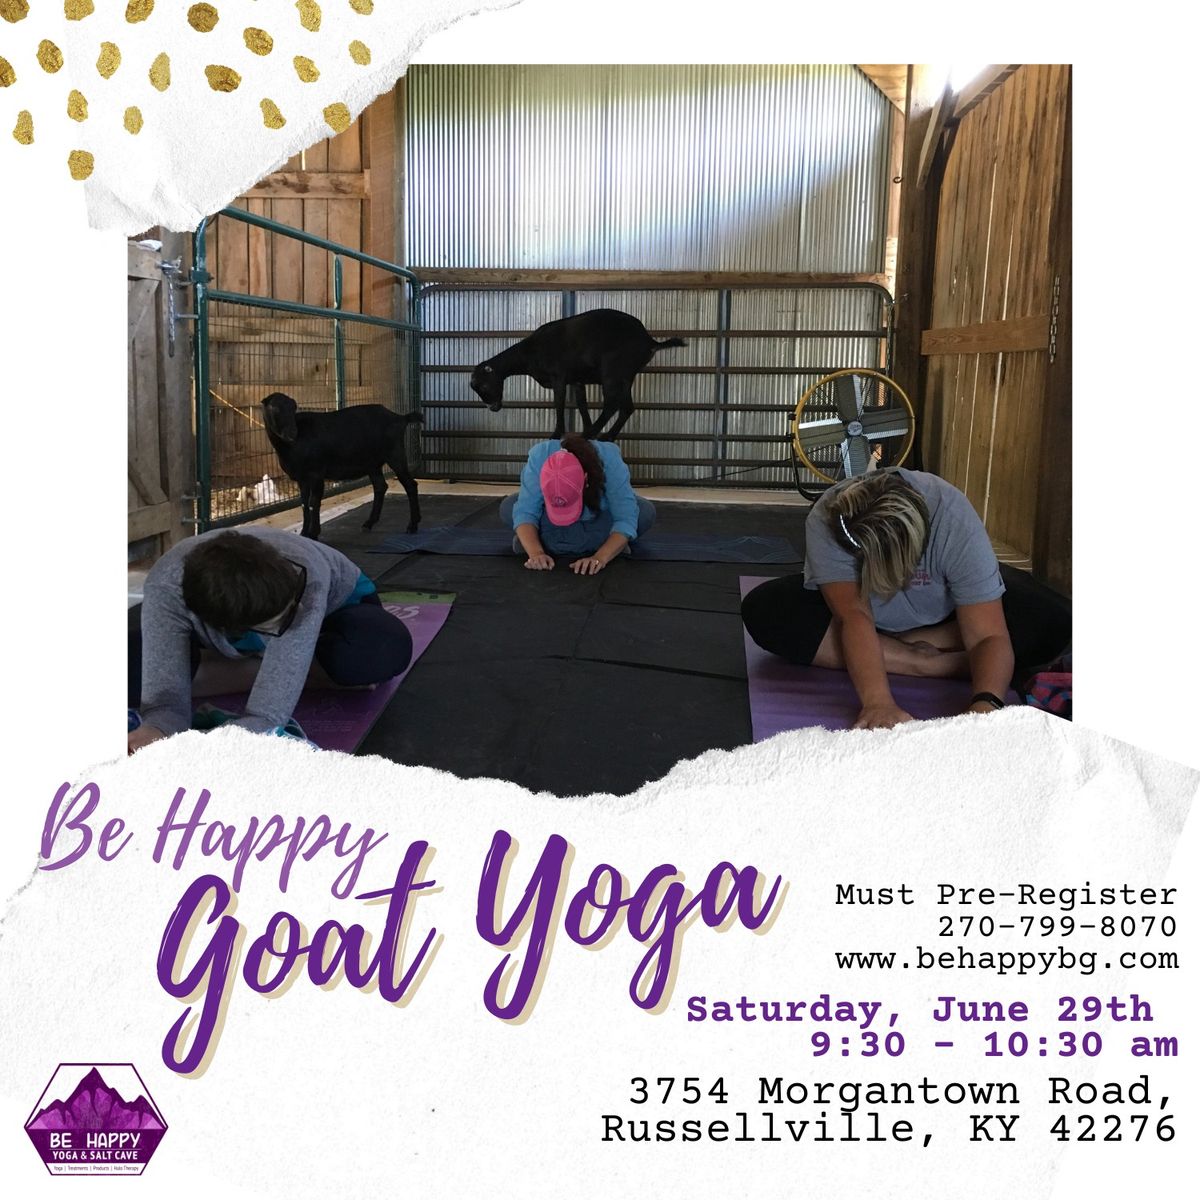 Be Happy Goat Yoga